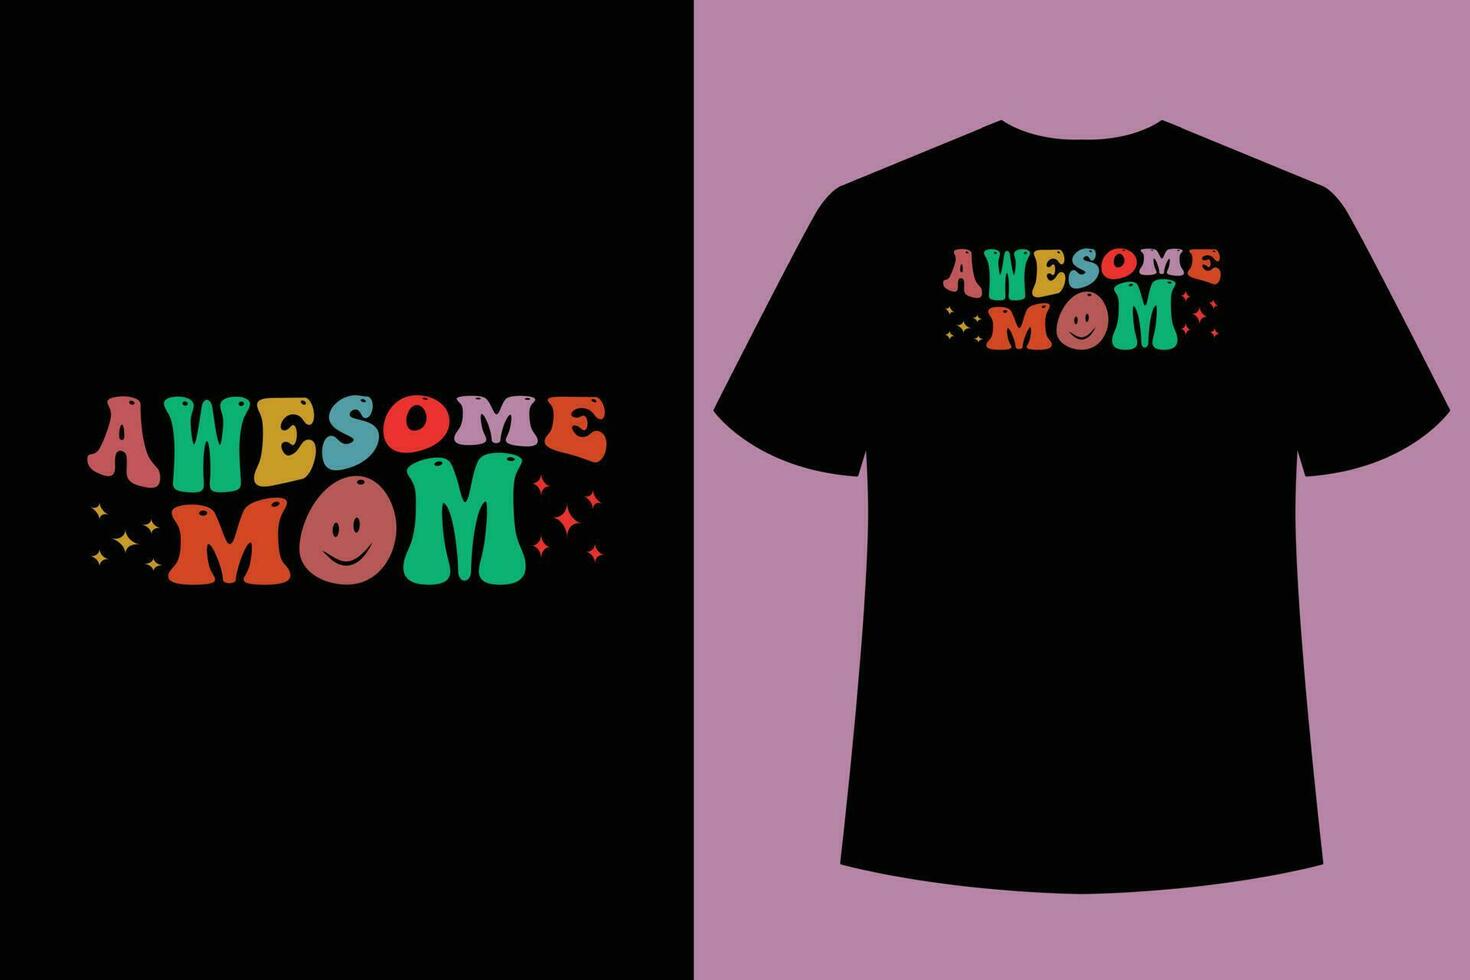 wellig retro Mama T-Shirt Design, Typografie T-Shirt Design, Beste Mama T-Shirt Design vektor